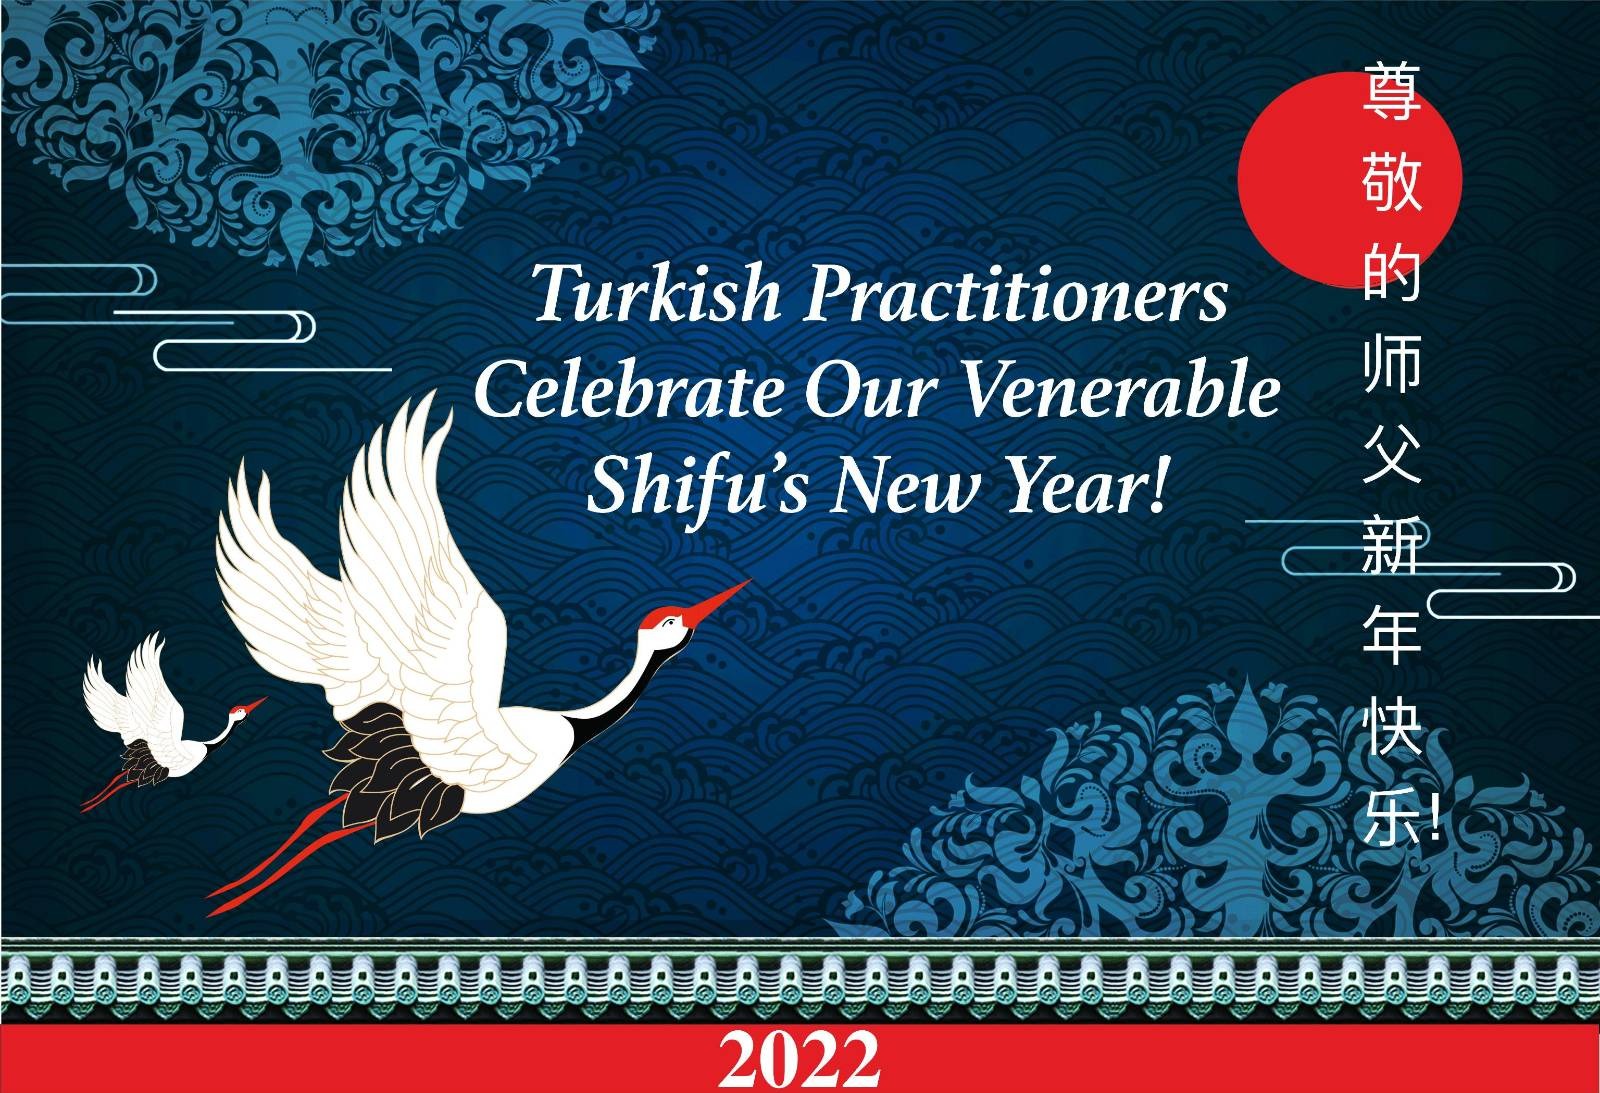 Image for article Türkiye'deki Uygulayıcılar Saygıdeğer Shifu Li'nin 2021 Yeni Yılını Kutluyor!